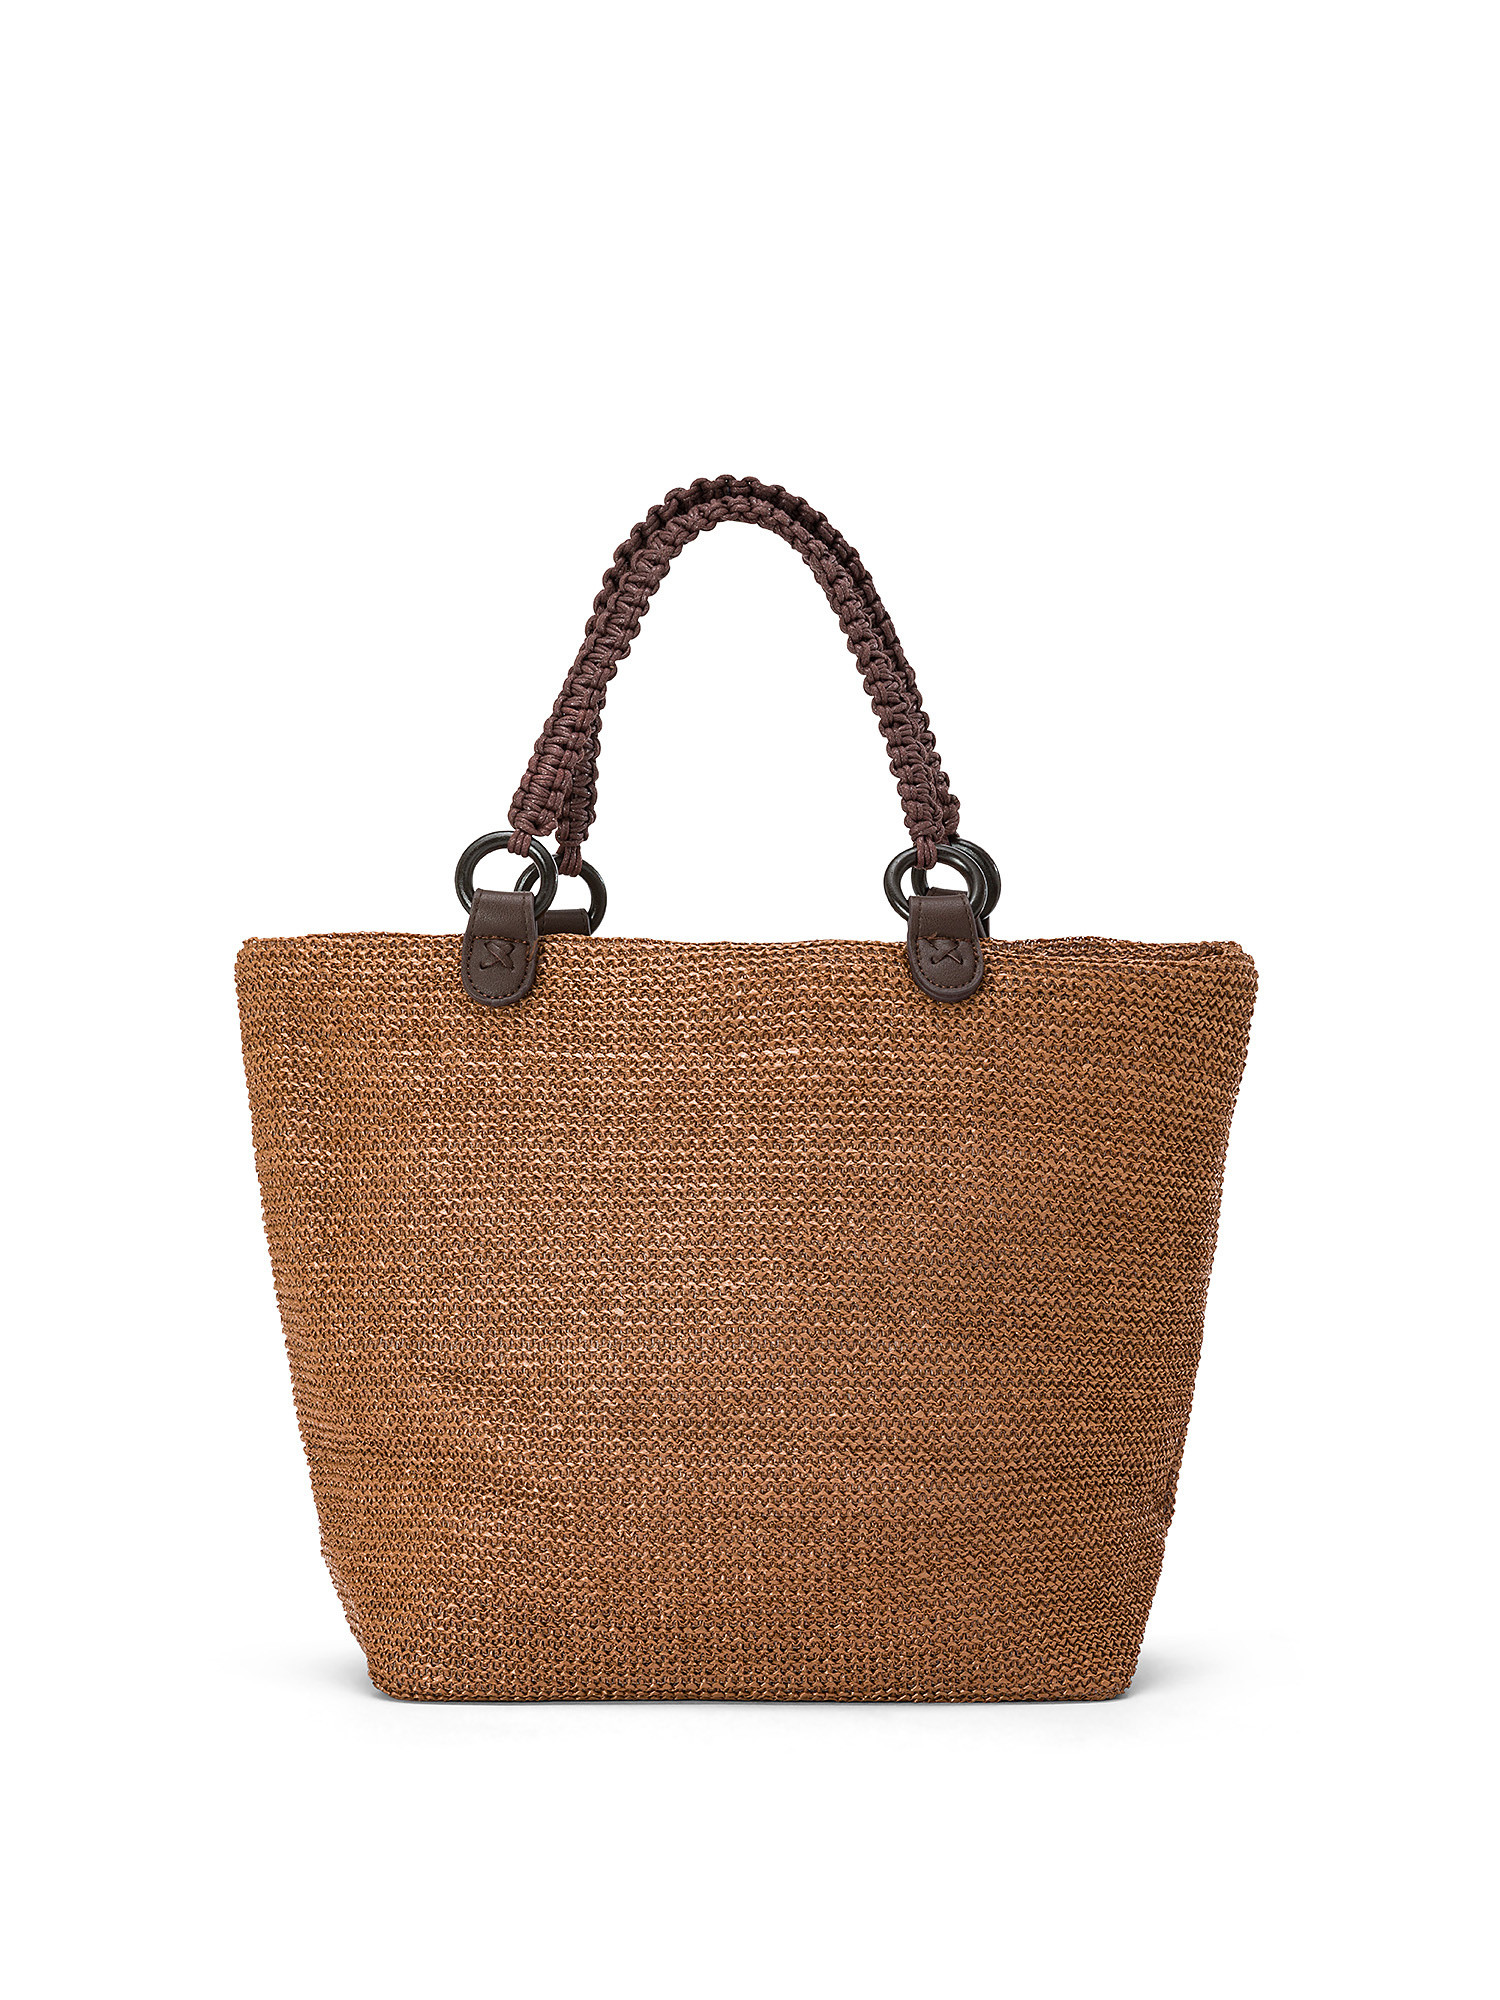 Koan - Shopping bag, Brown, large image number 0